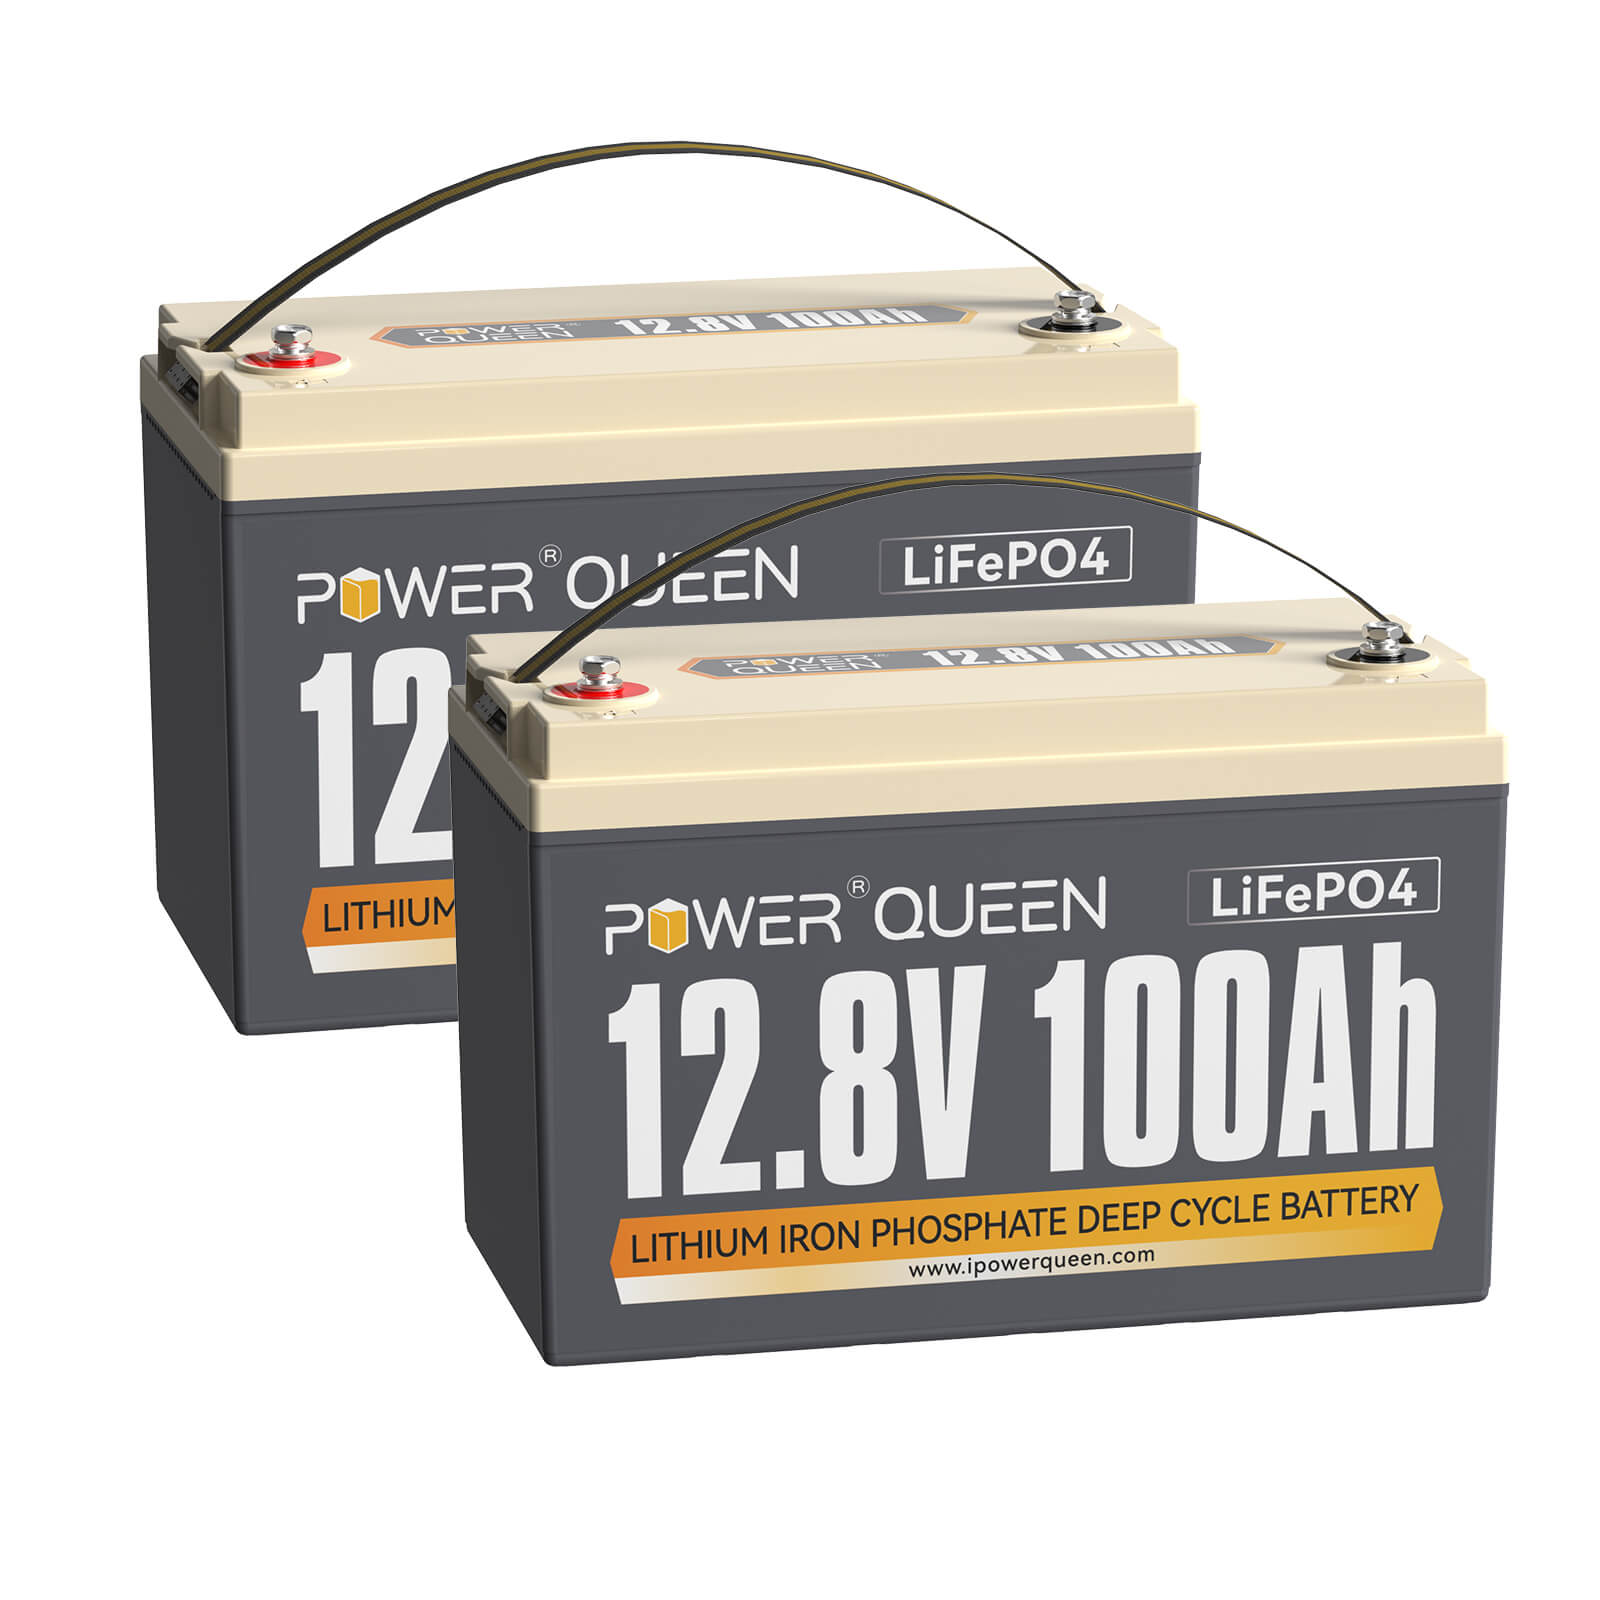 Power Queen 12,8V 100Ah Niedrigtemp LiFePO4-Akku für Trollingmotor